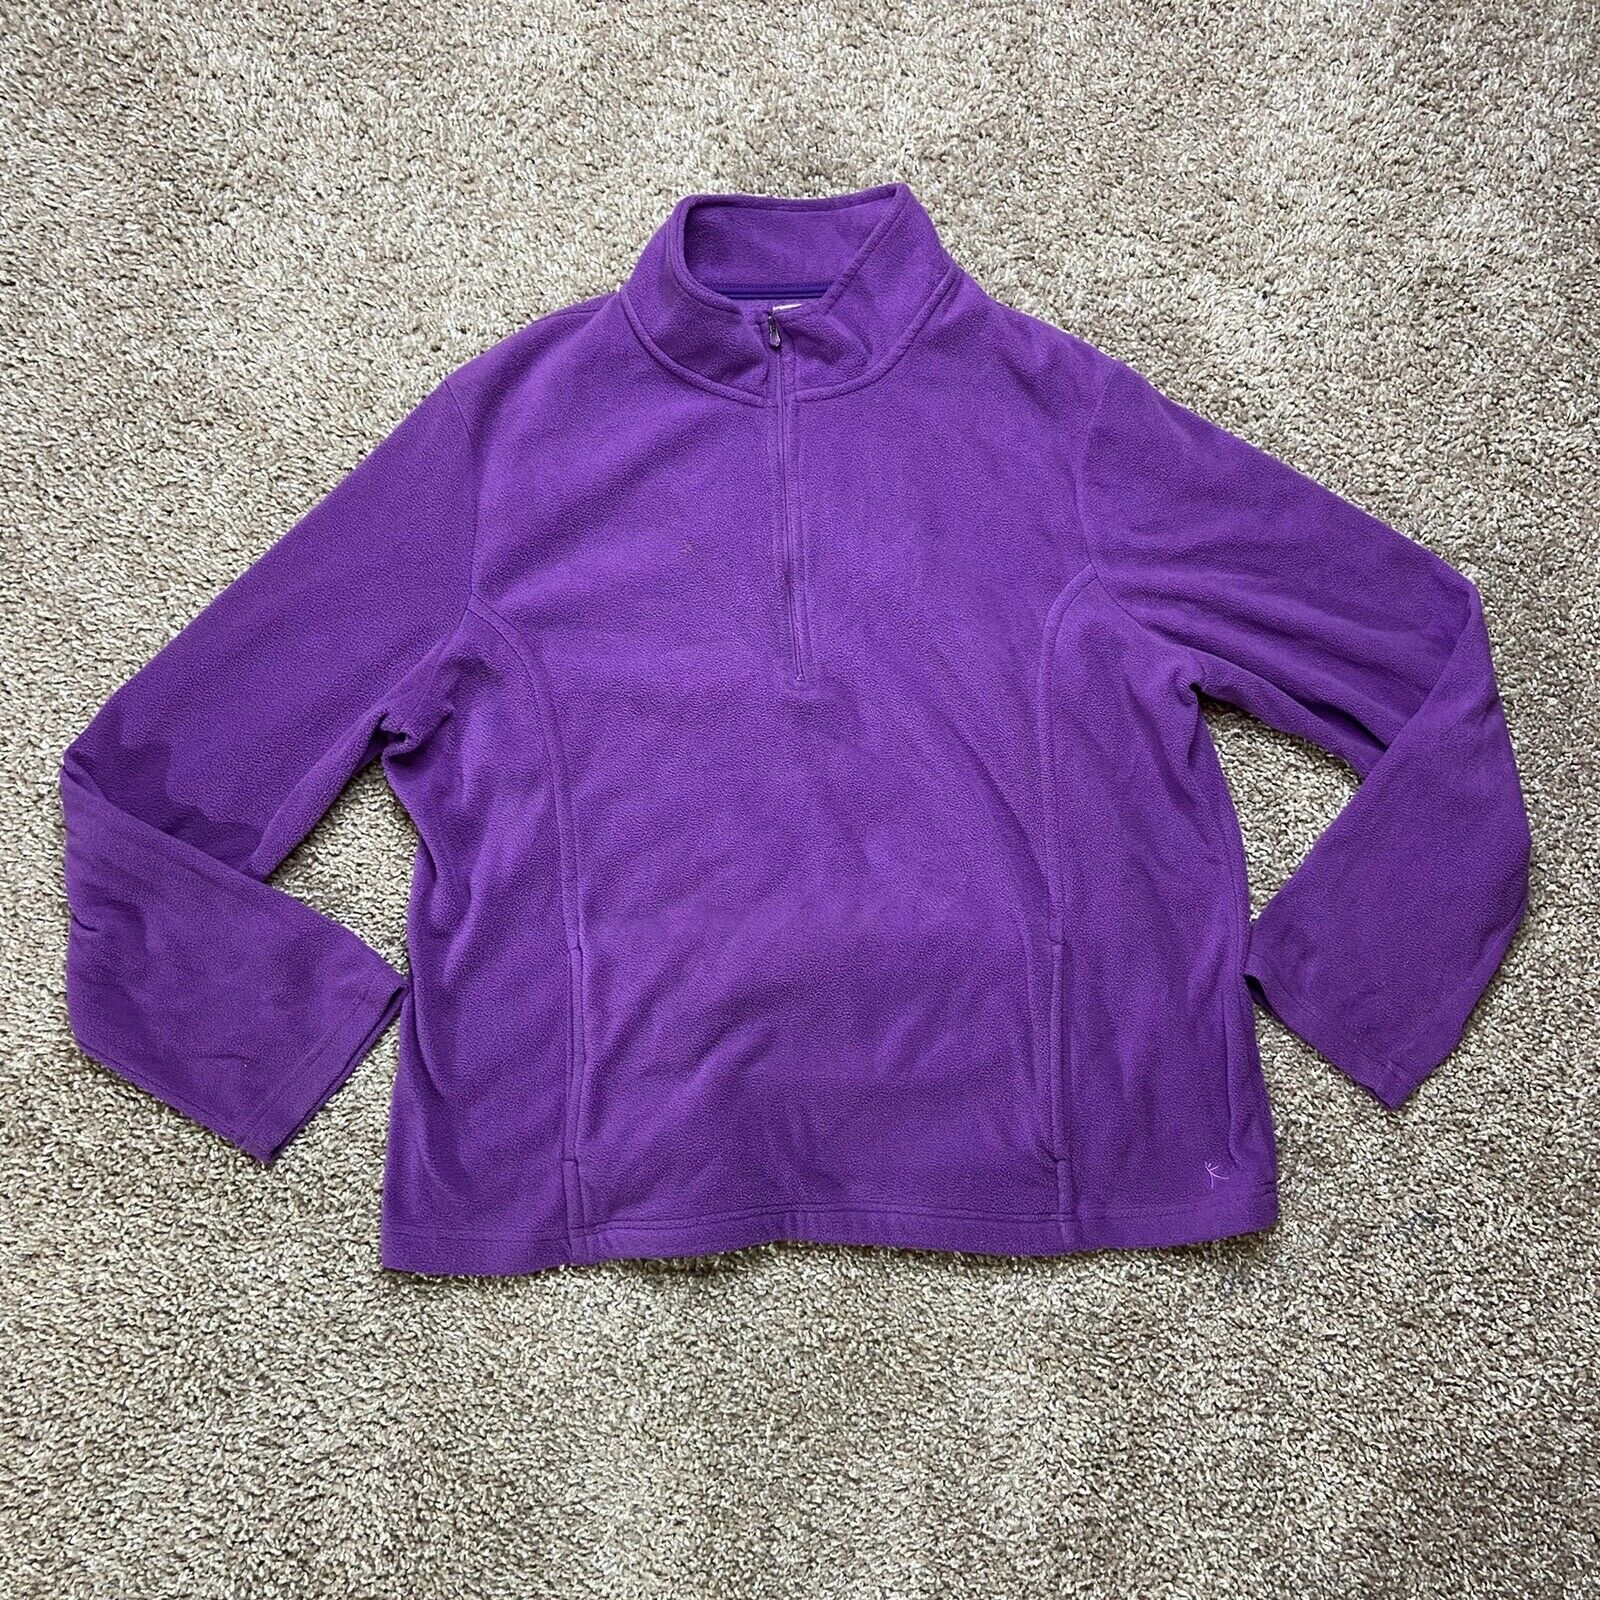 Danskin Now Long Sleeve Jacket Ladies Size Xxl Purple